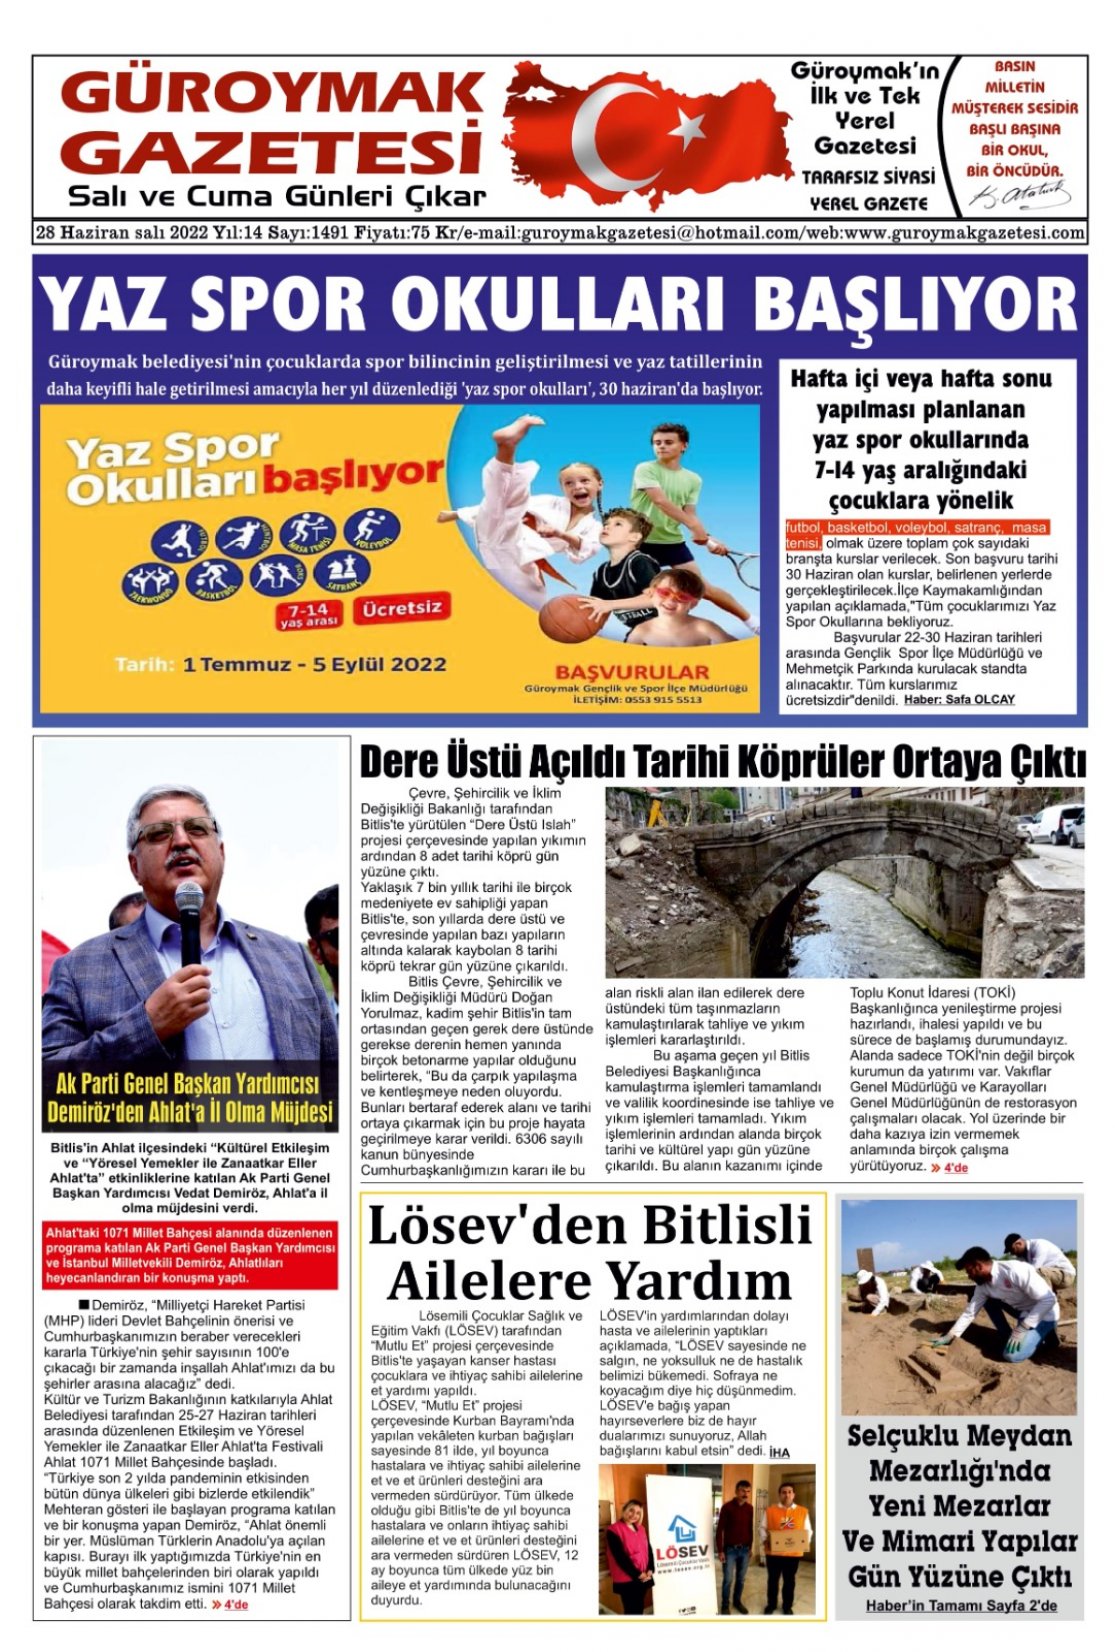 Güroymak Gazetesi WhatsApp Image 2022-06-28 at 00.05.25.jpeg Sayılı Gazete Küpürü